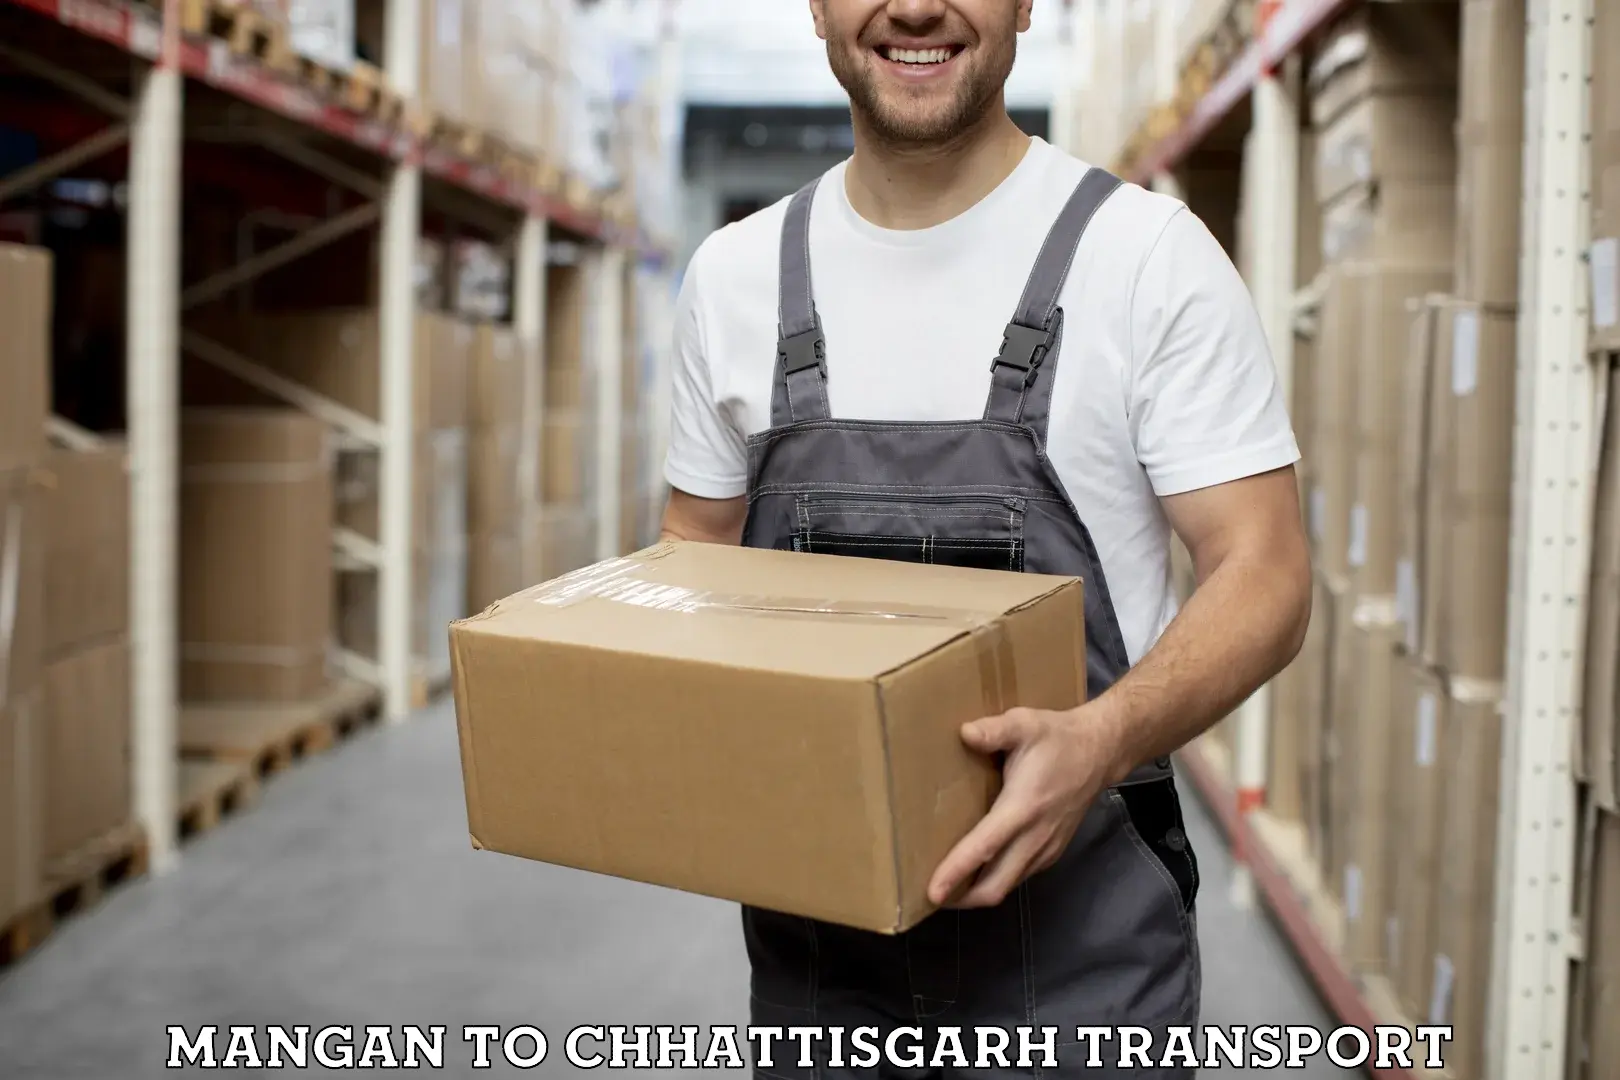 Furniture transport service Mangan to Mungeli